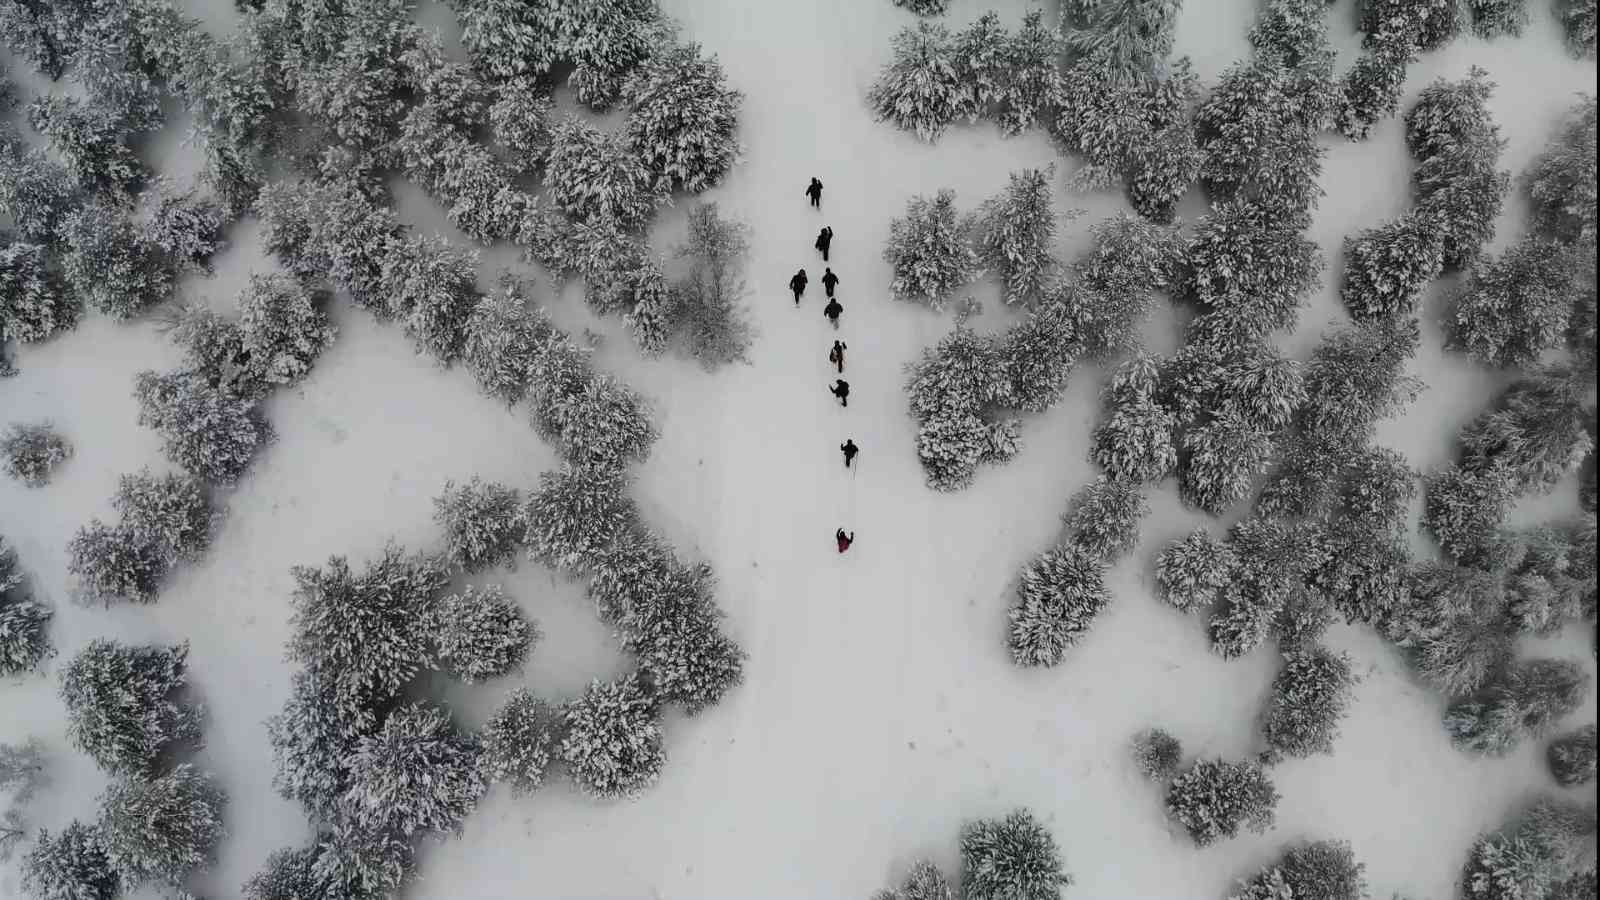 Karla kaplı kent ormanında doğa yürüyüşü: Eşsiz manzara havadan görüntülendi #kirikkale